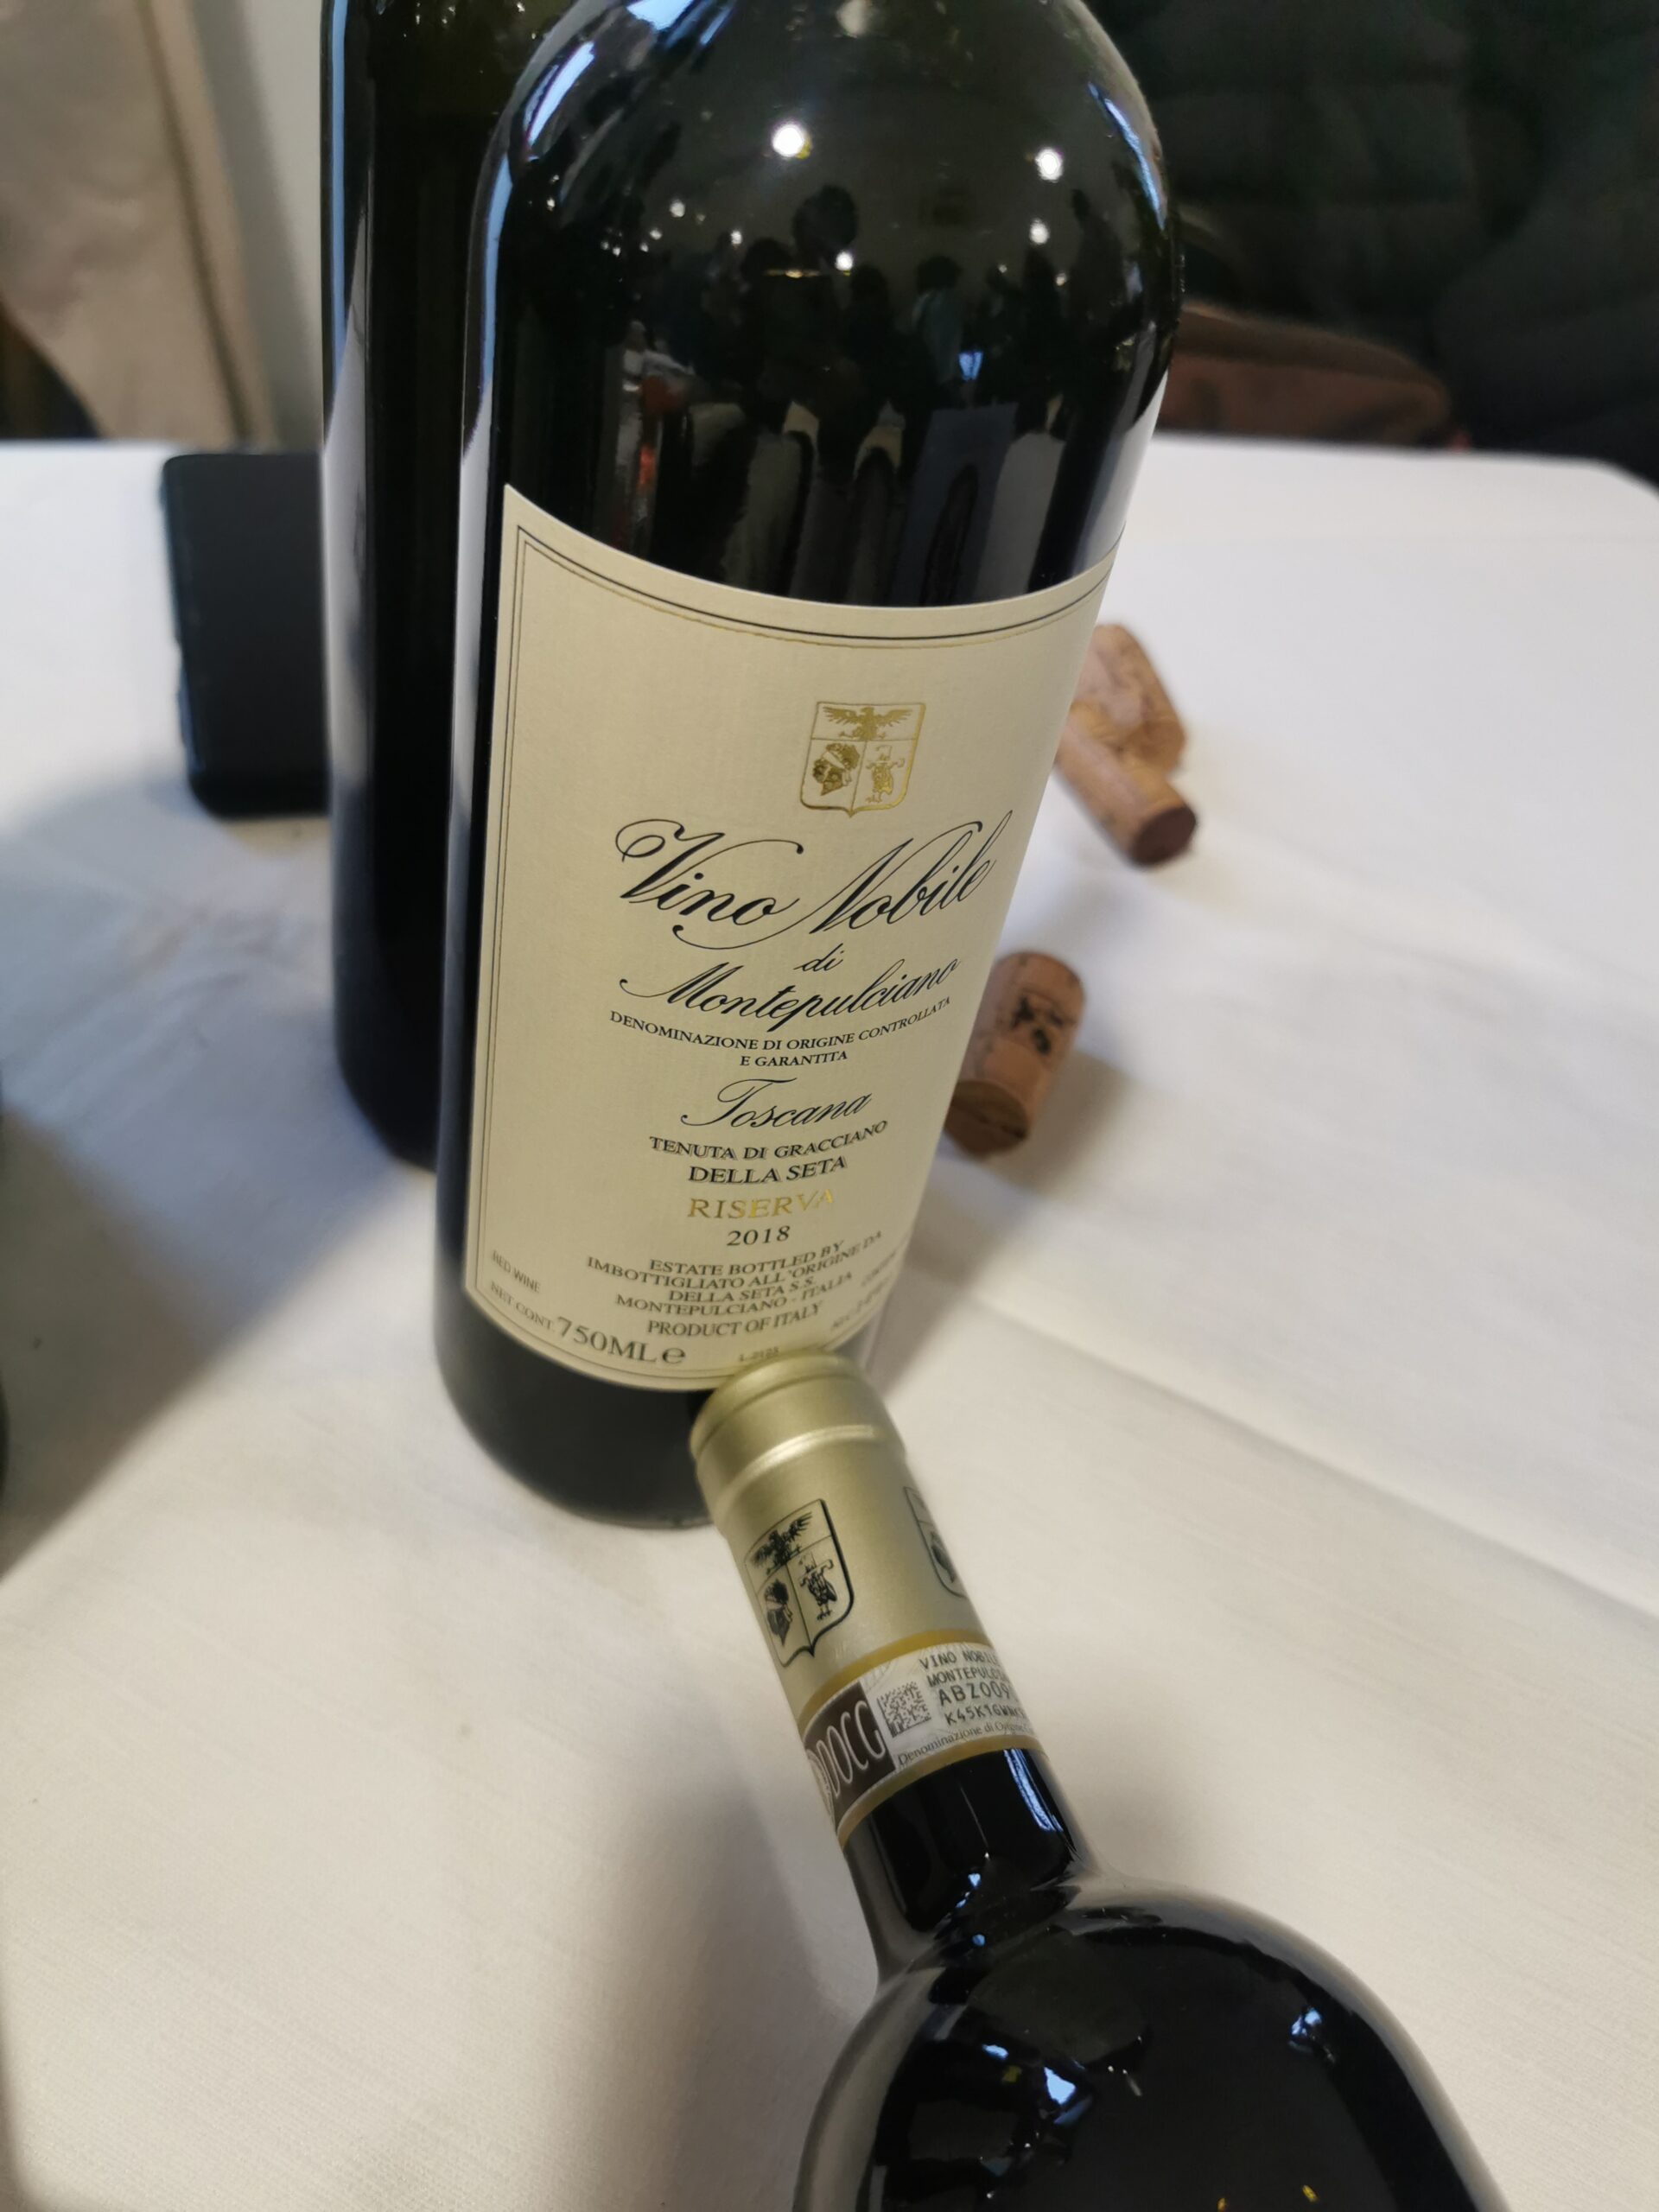 Bottiglie assaggiate durante l'evento da Elsa Leandri, Tenuta di Gracciano della Seta, Vino Nobile di Montepulciano